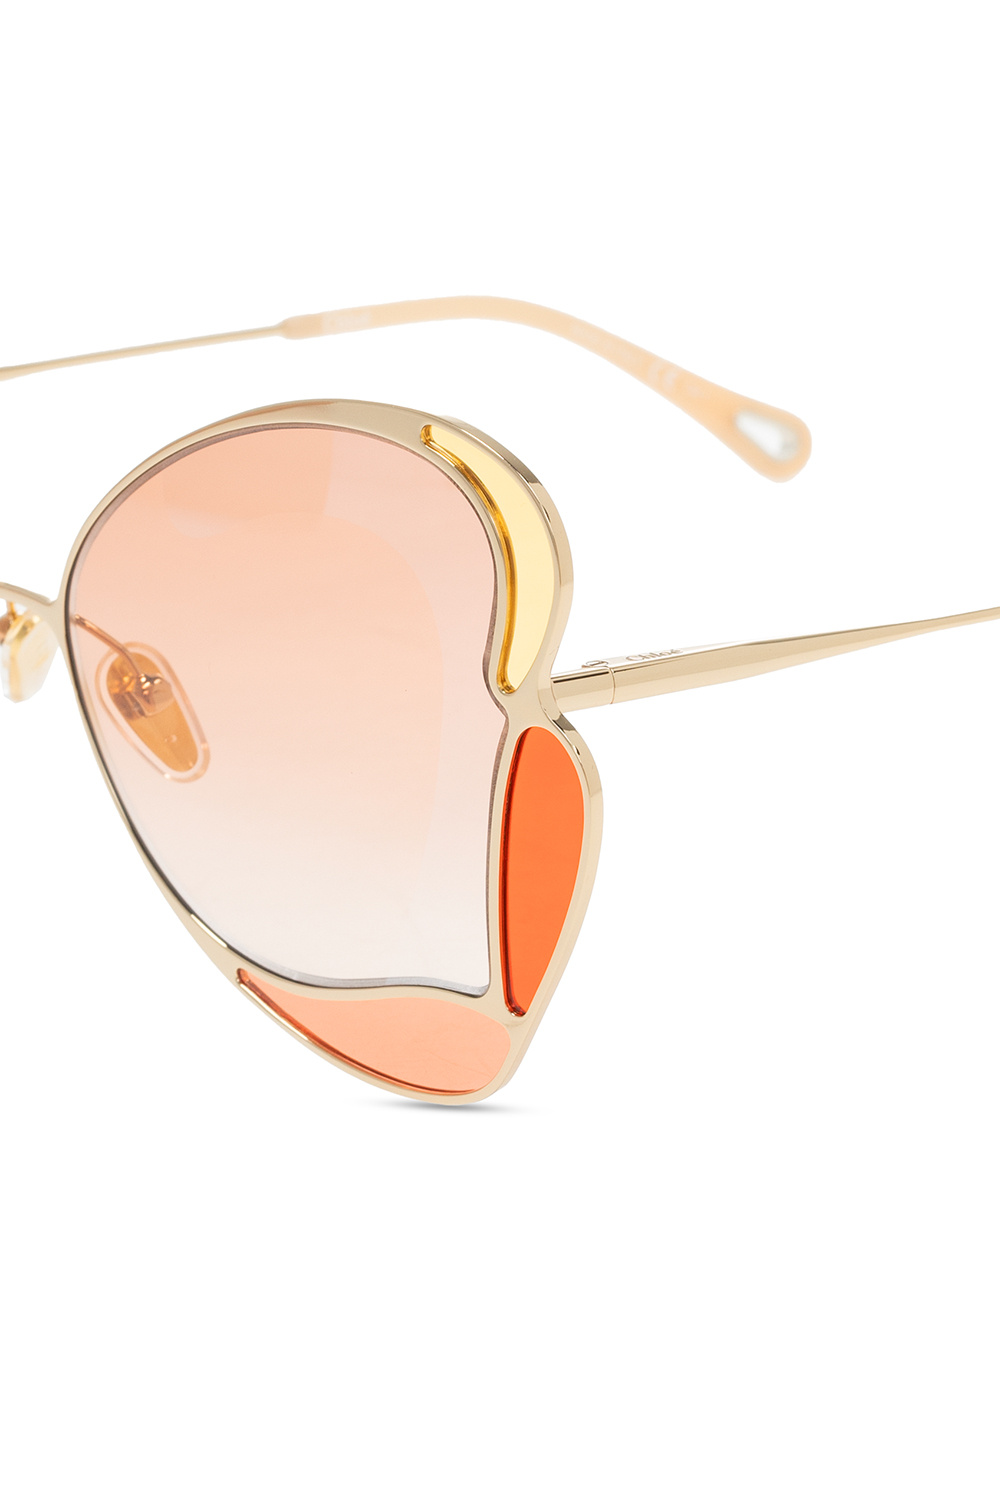 Chloé Michael Kors Copenhagen cat-eye frame sunglasses